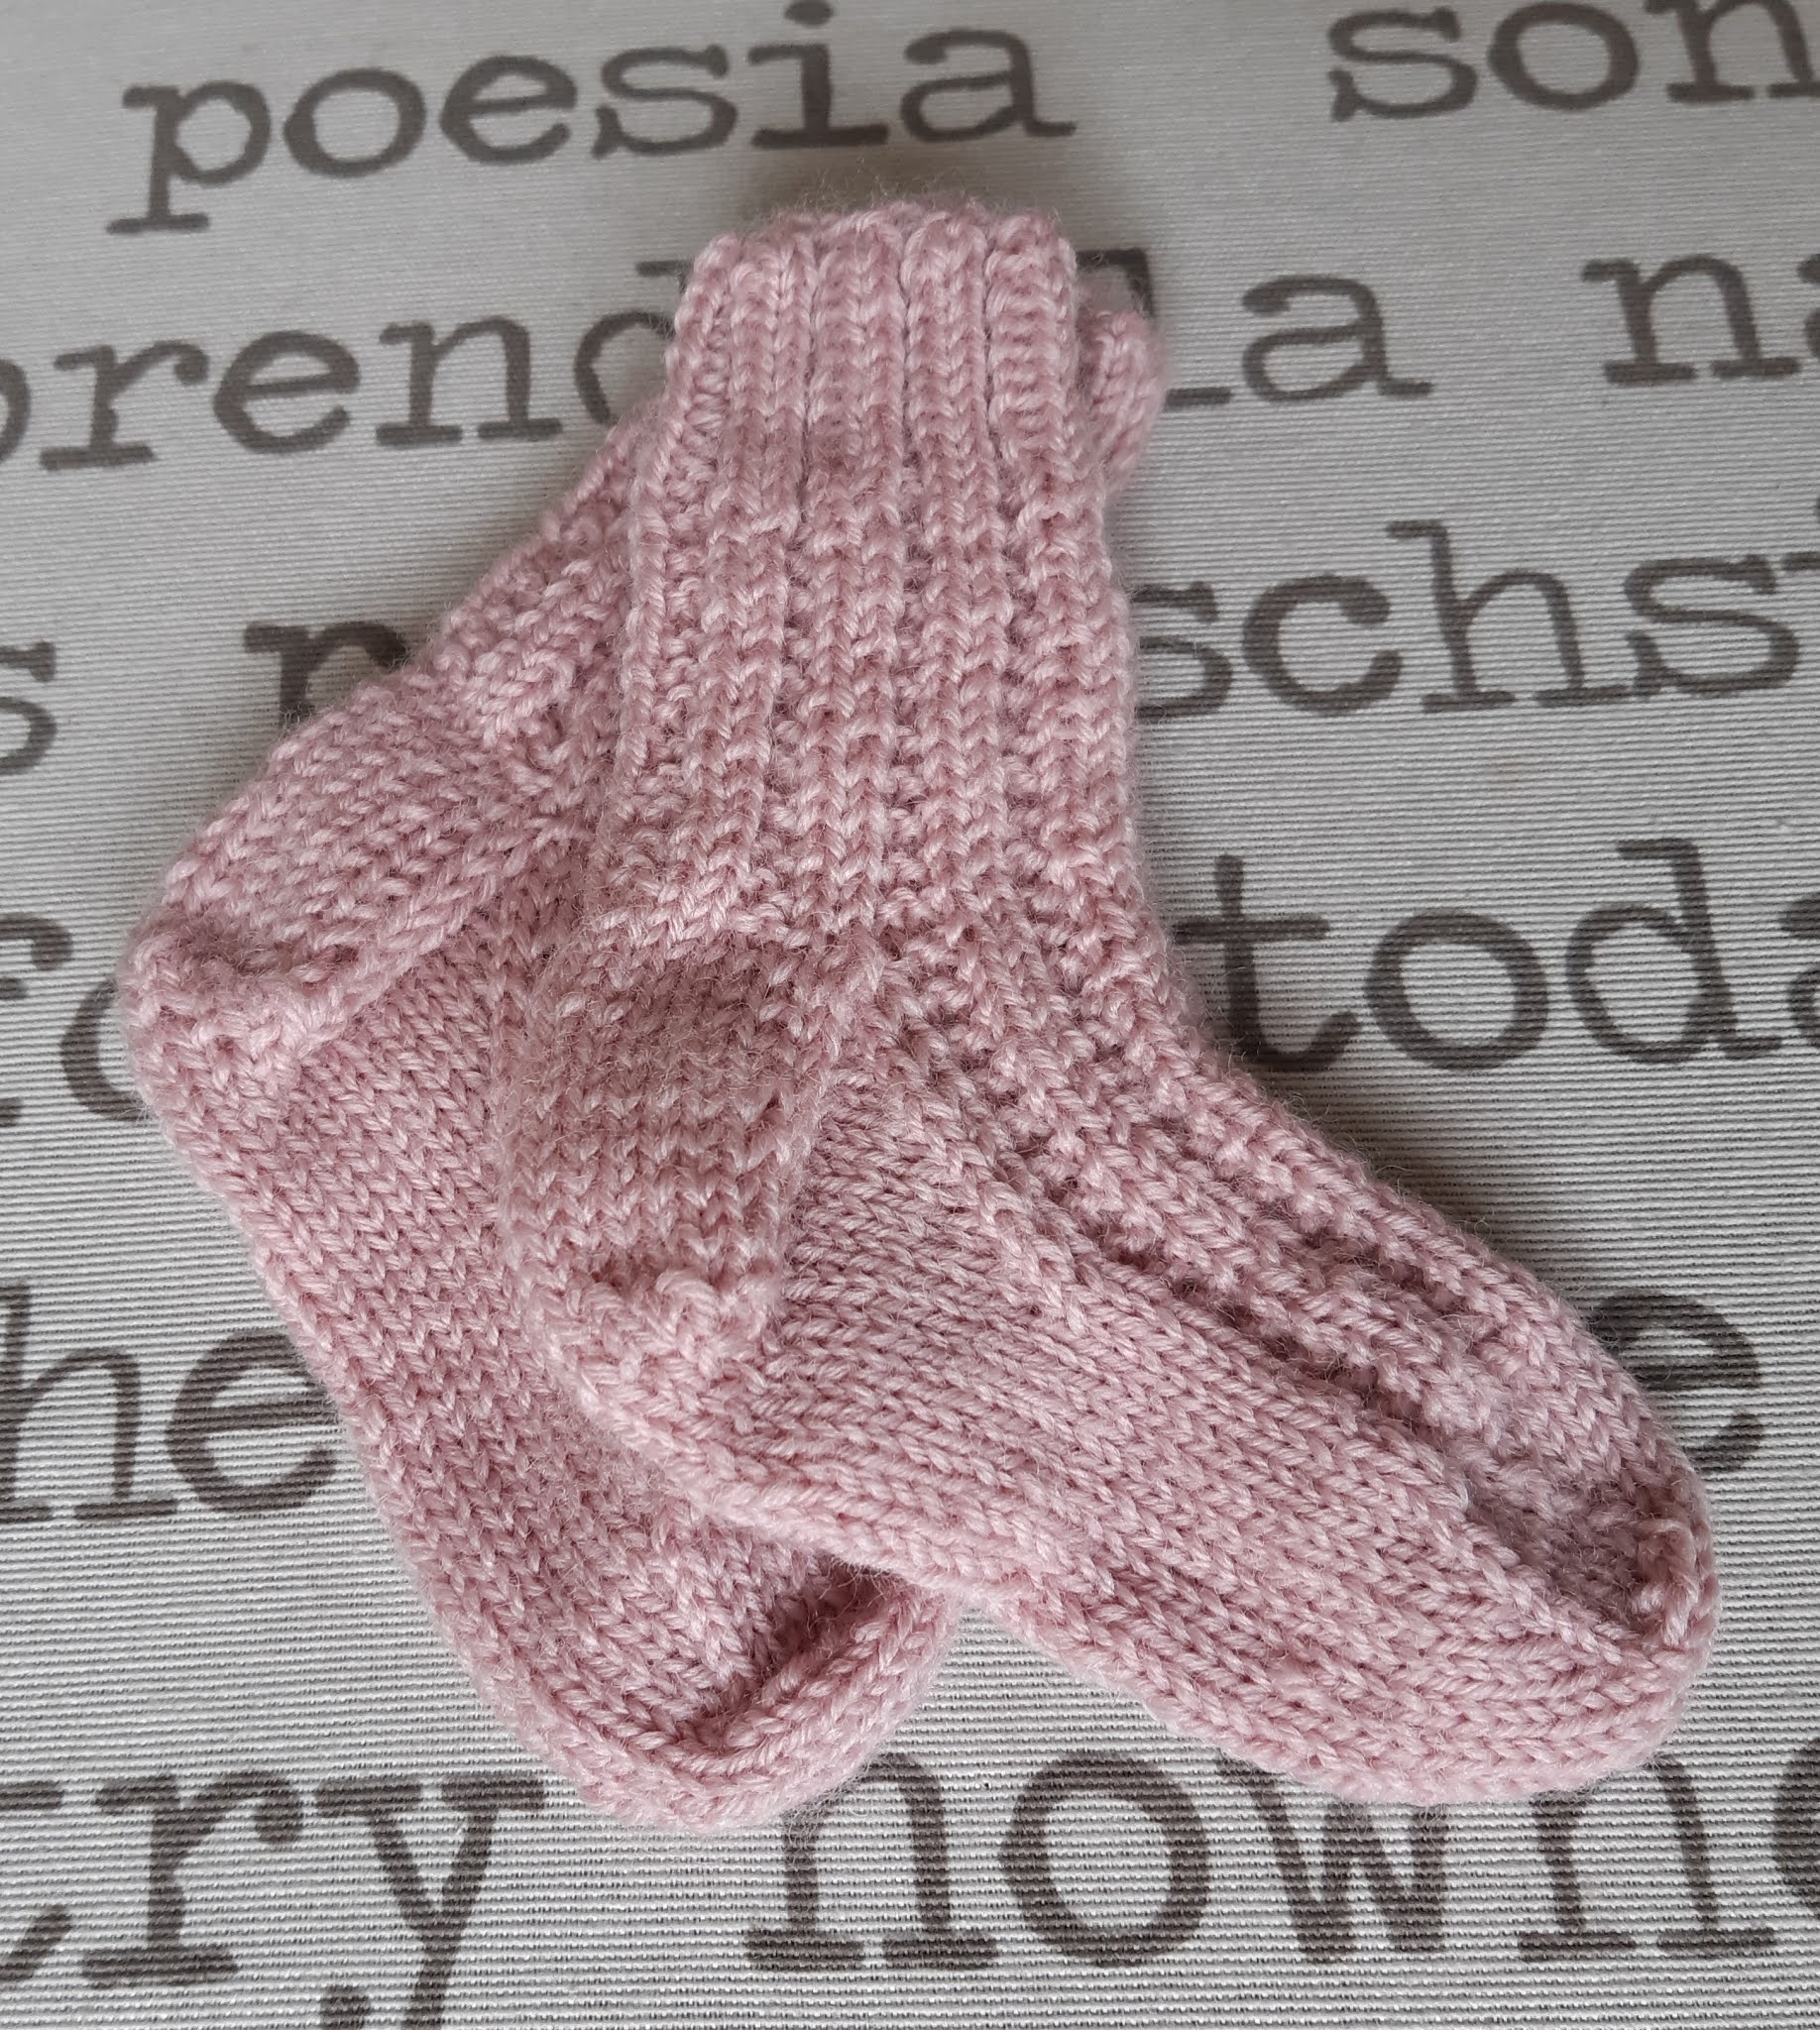 hovedlandet Memo Håbefuld My Mommy's Corner: Babysokker i broken rib stitch